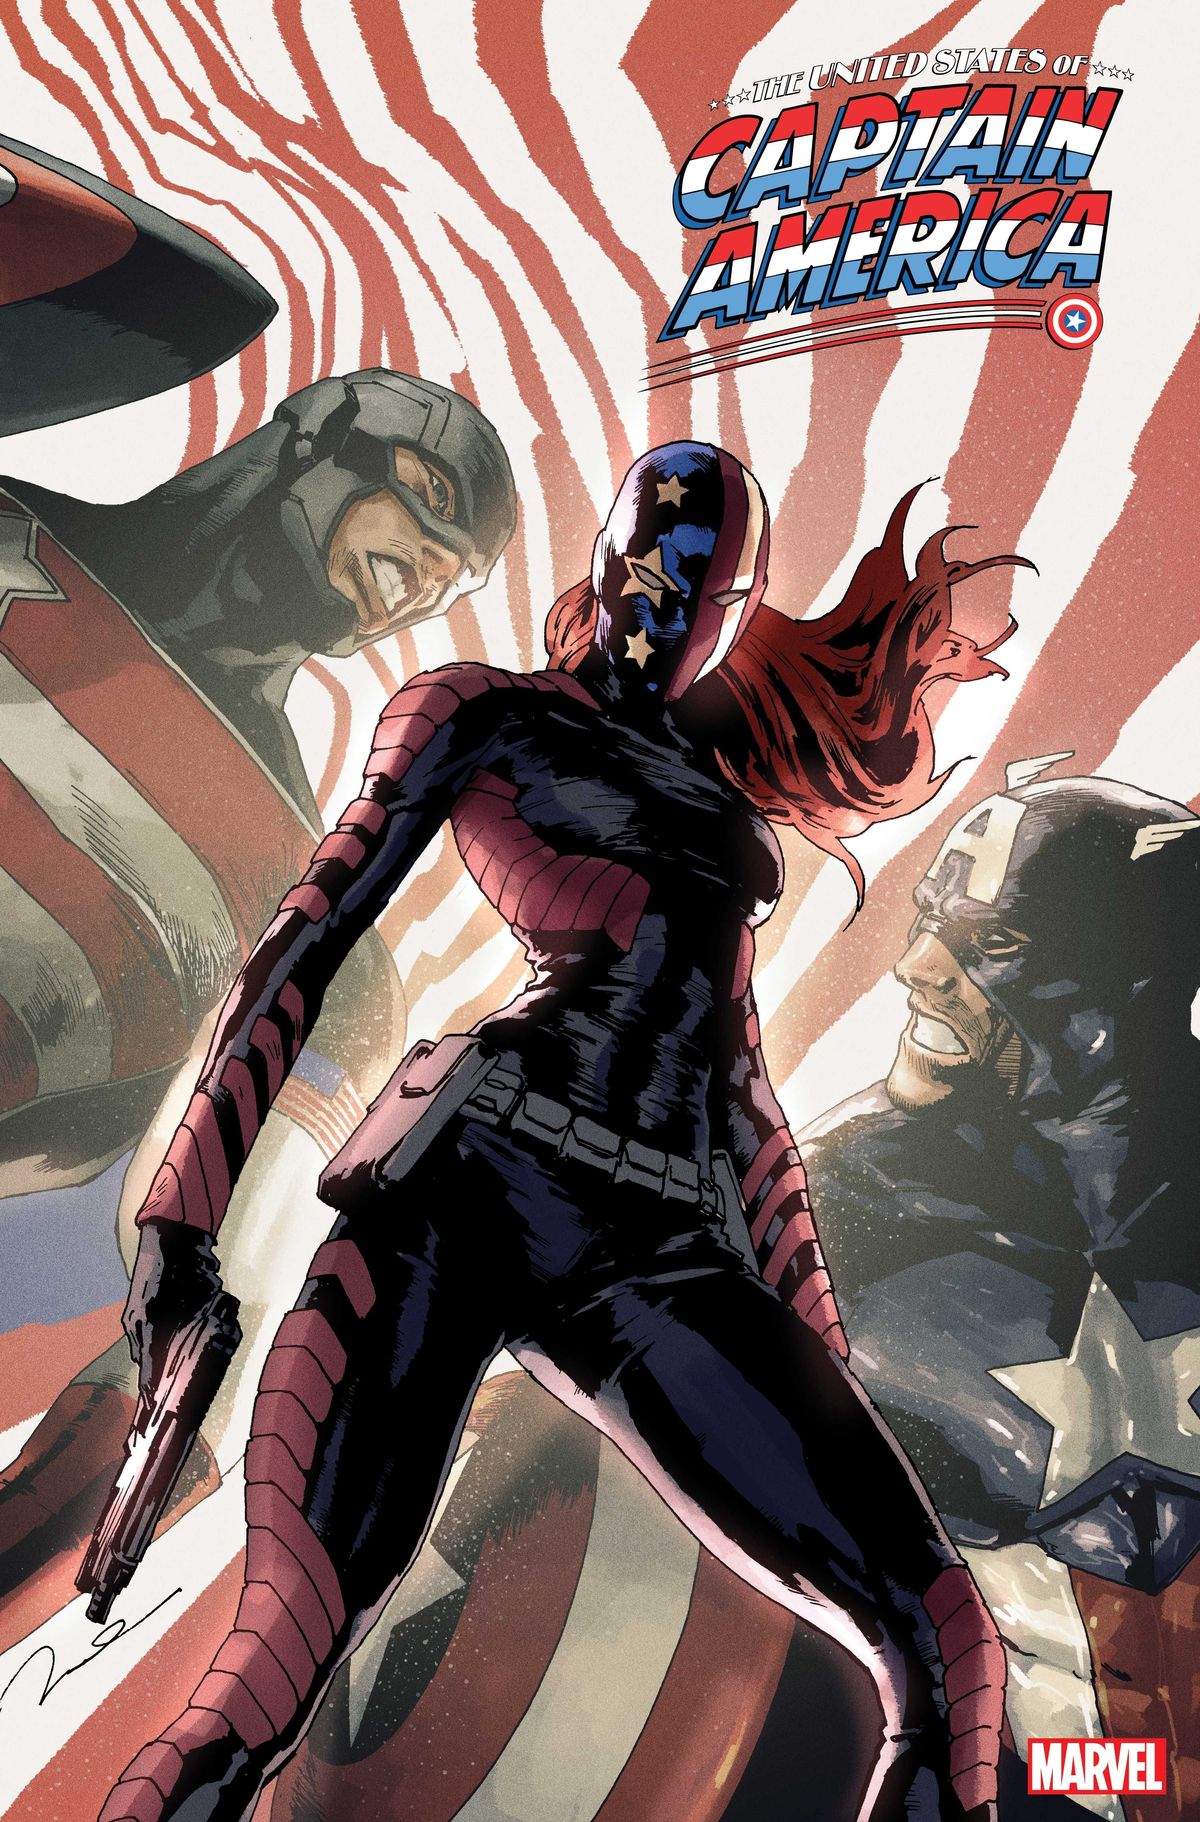 Marvelova najnovejša kapitanka Amerika je filipinsko-ameriška ženska v kolegijski dobi